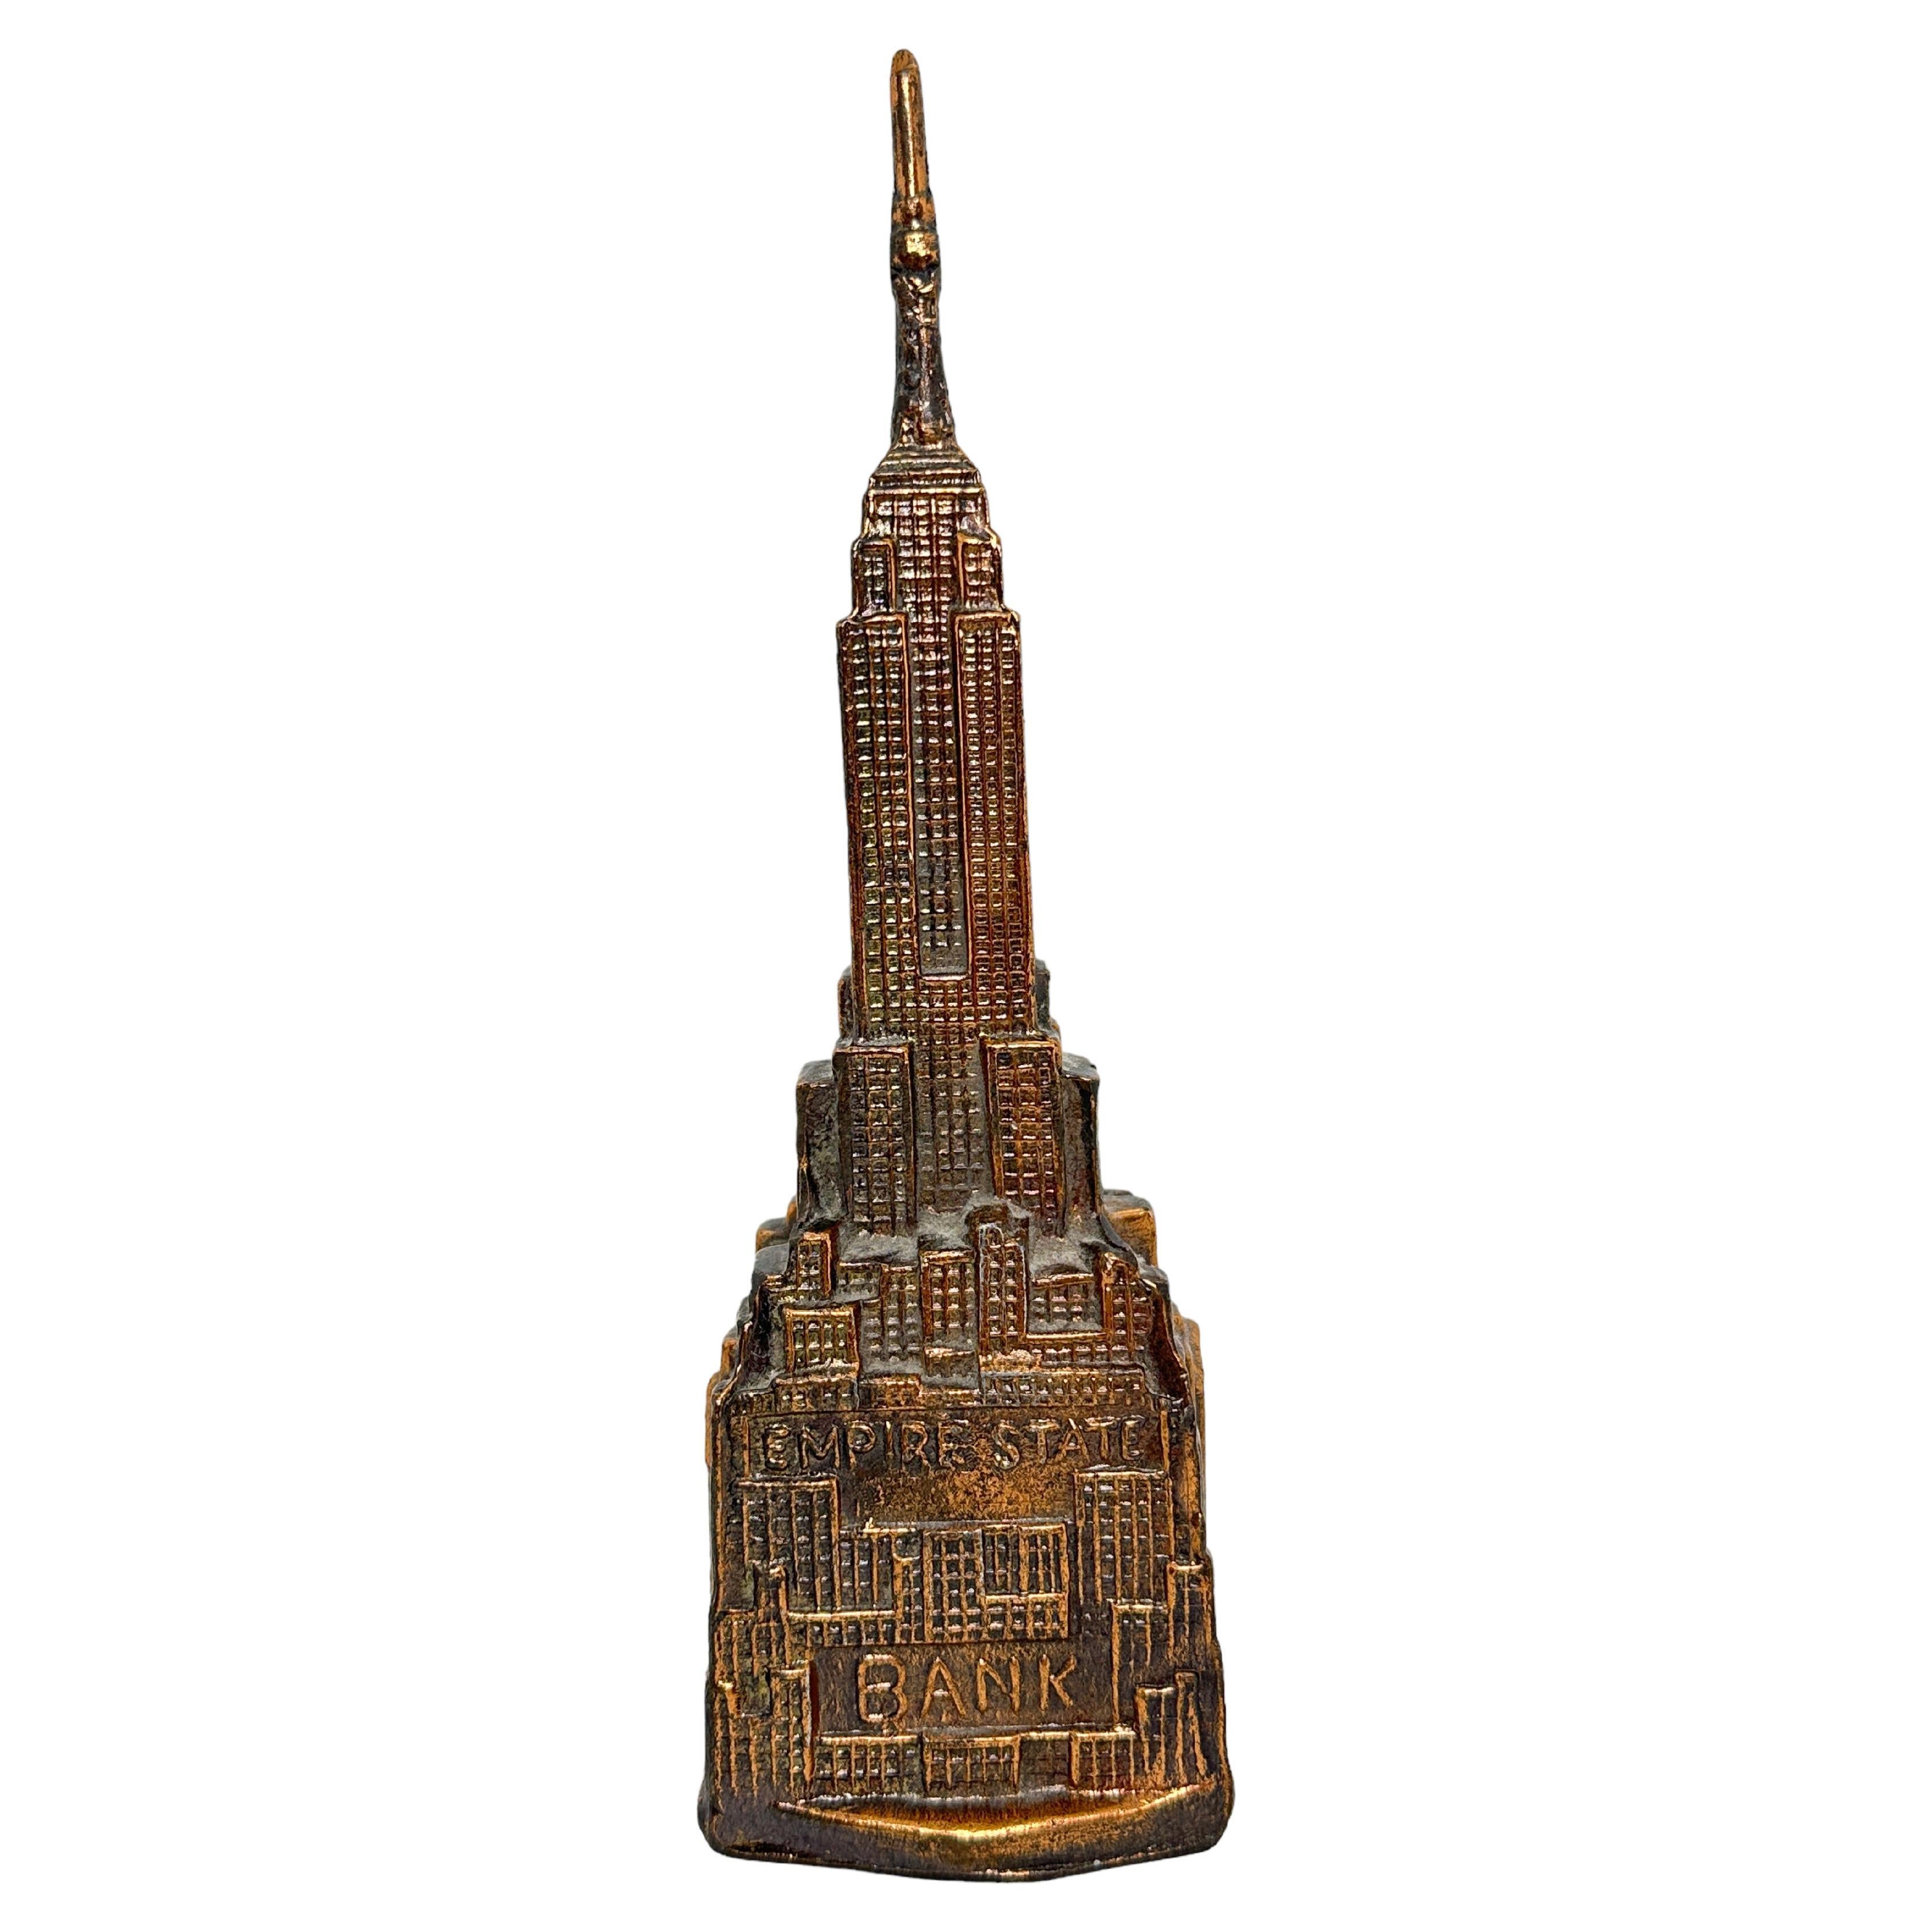 Tirelire en métal de l'Empire State Building Vintage, 1960s